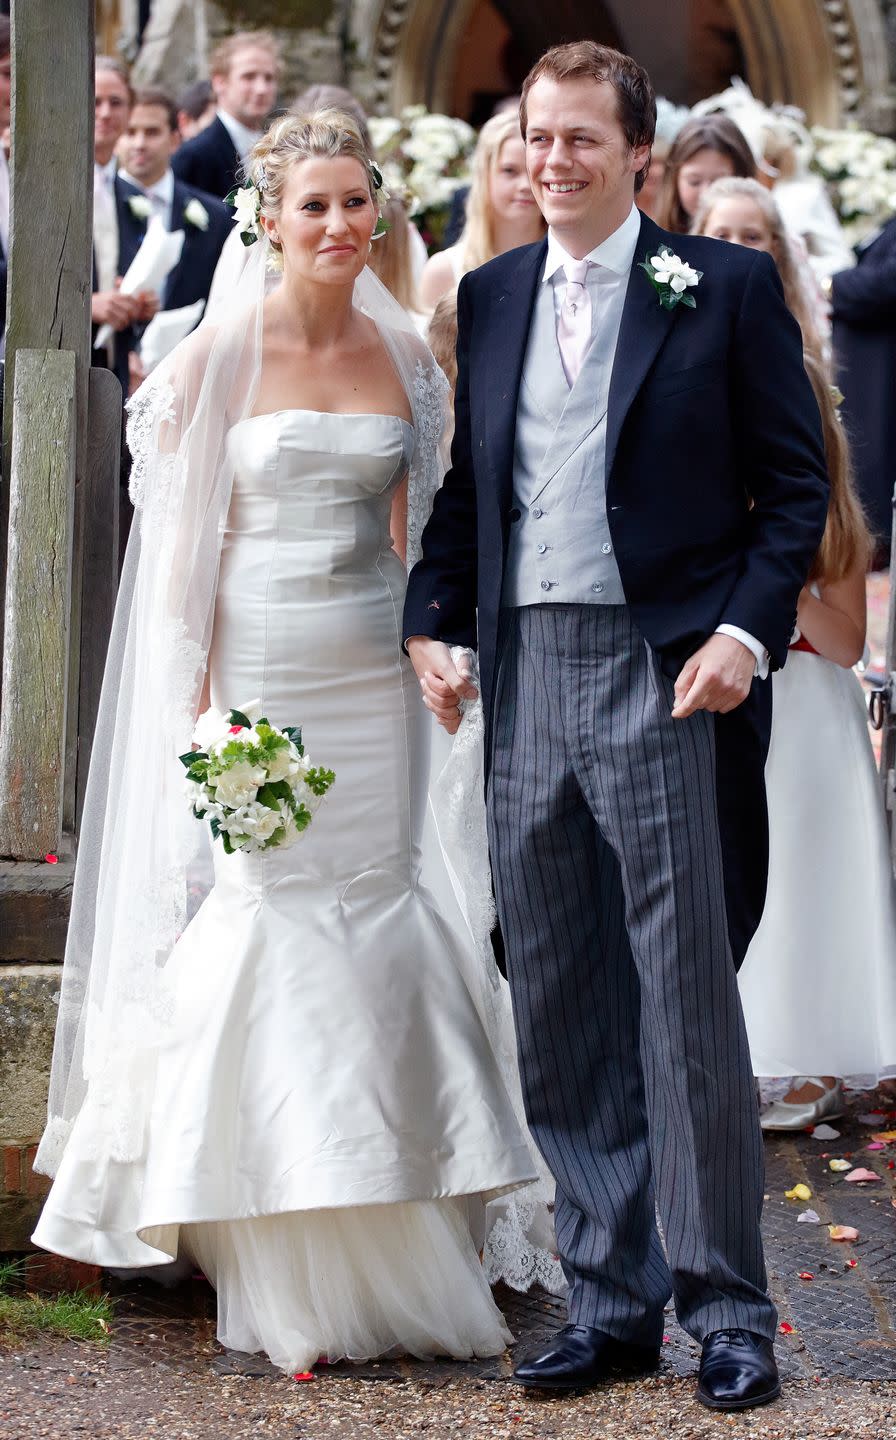 <p>El 10 de septiembre de 2005, Tom Parker-Bowles contrajo matrimonio en la iglesia de San Nicolás con Sara Buys, editora de moda. Tienen dos hijos.</p>